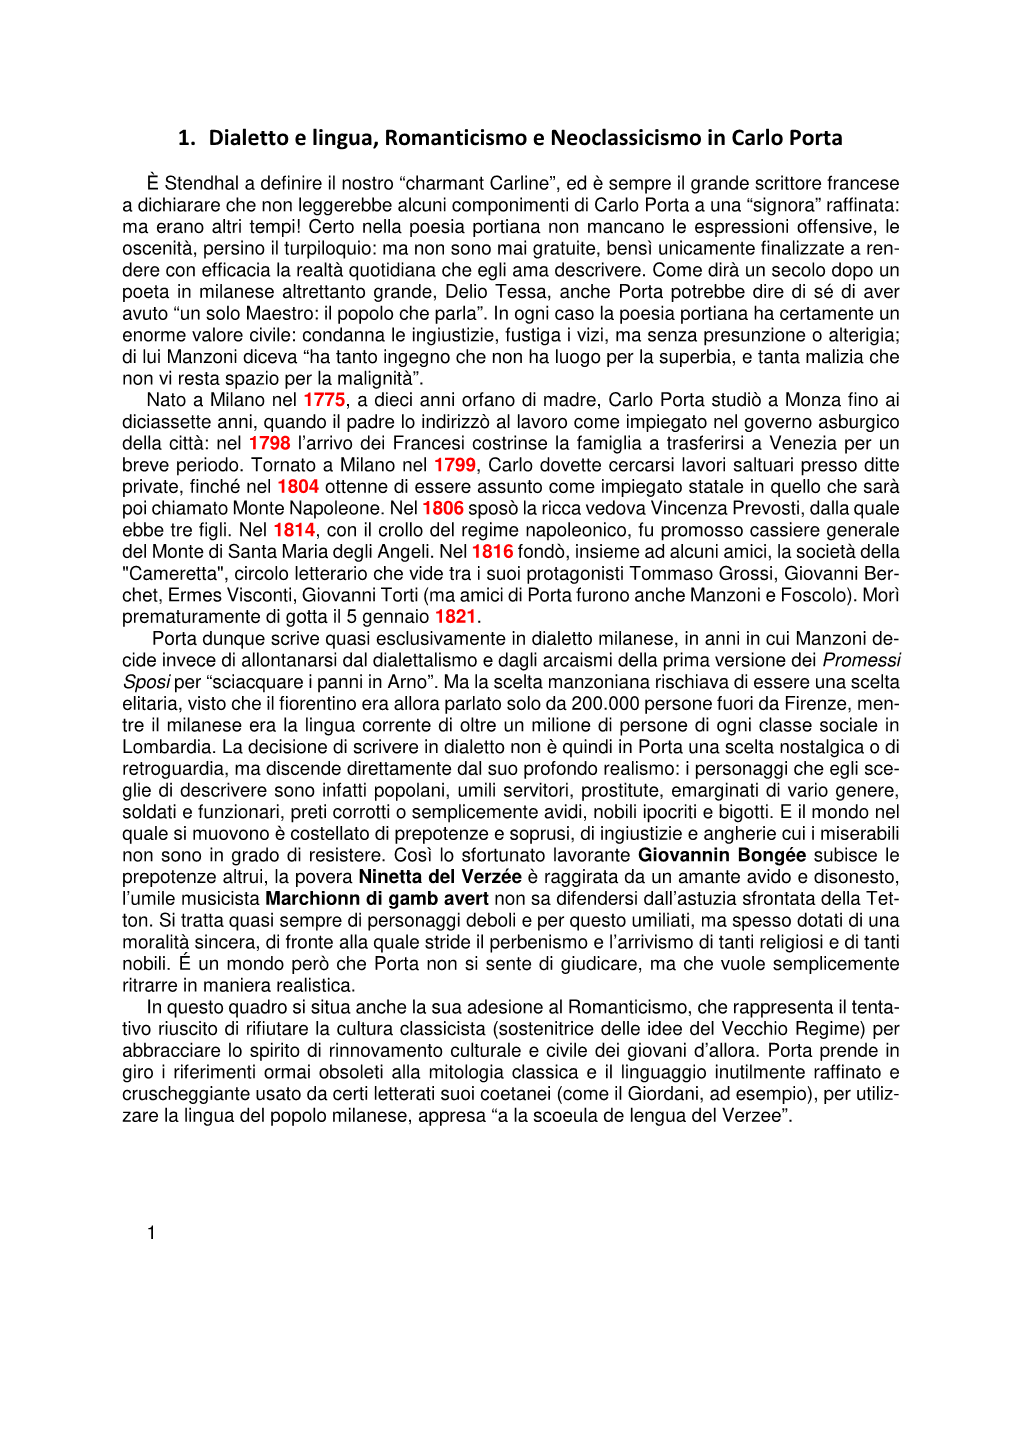 1. Dialetto E Lingua, Romanticismo E Neoclassicismo in Carlo Porta